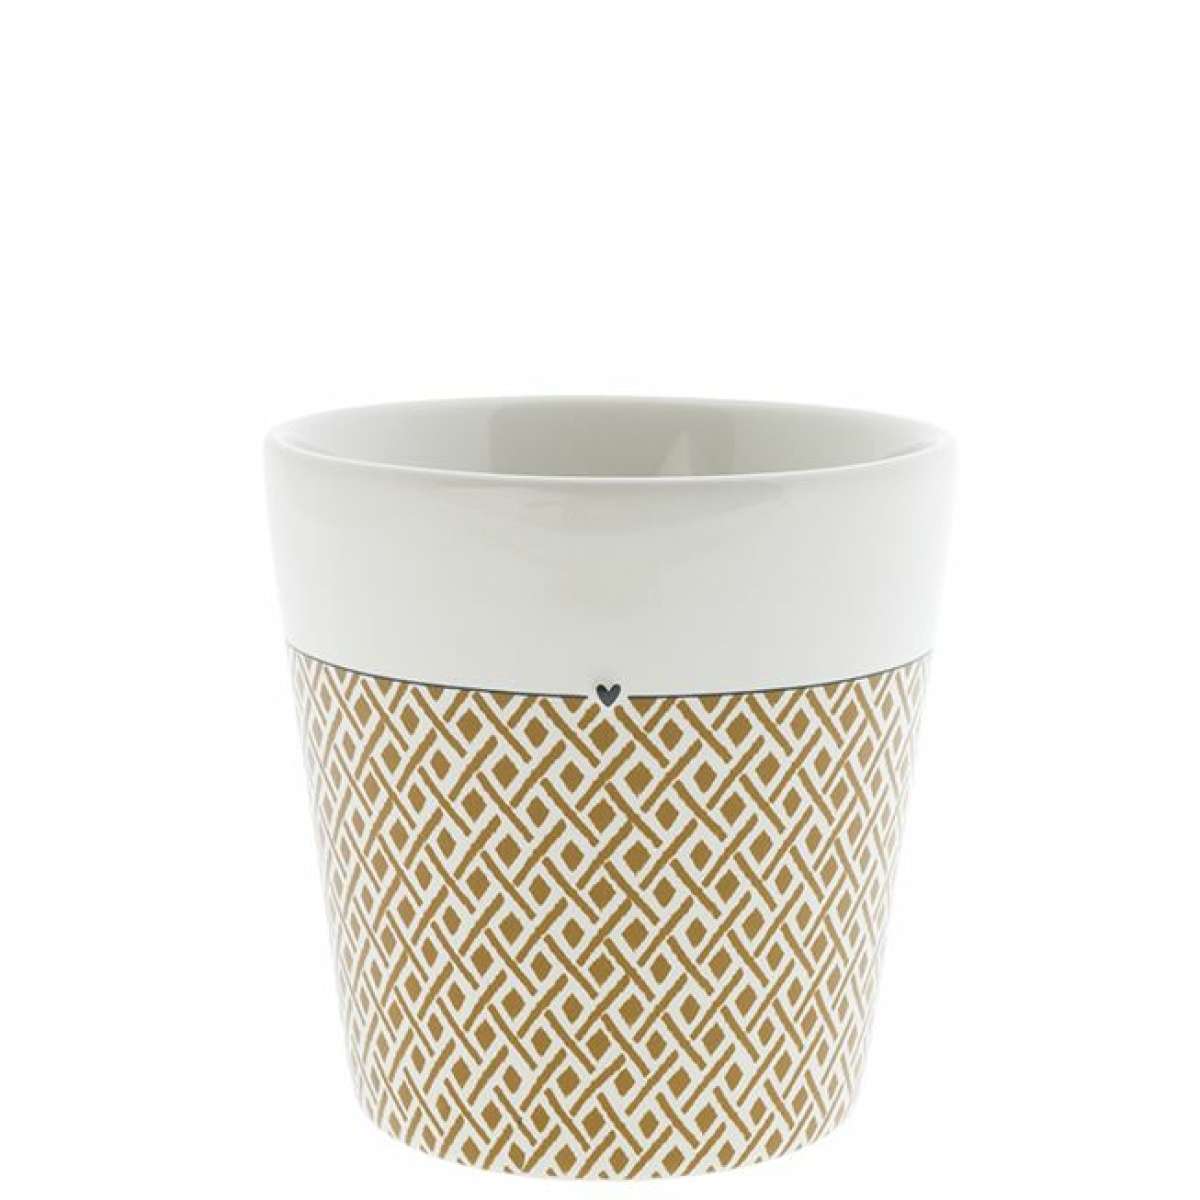 Immagine del prodotto Tazza Bicchiere in Ceramica Rombetti Caramello con Cuoricino | Bastion Collections